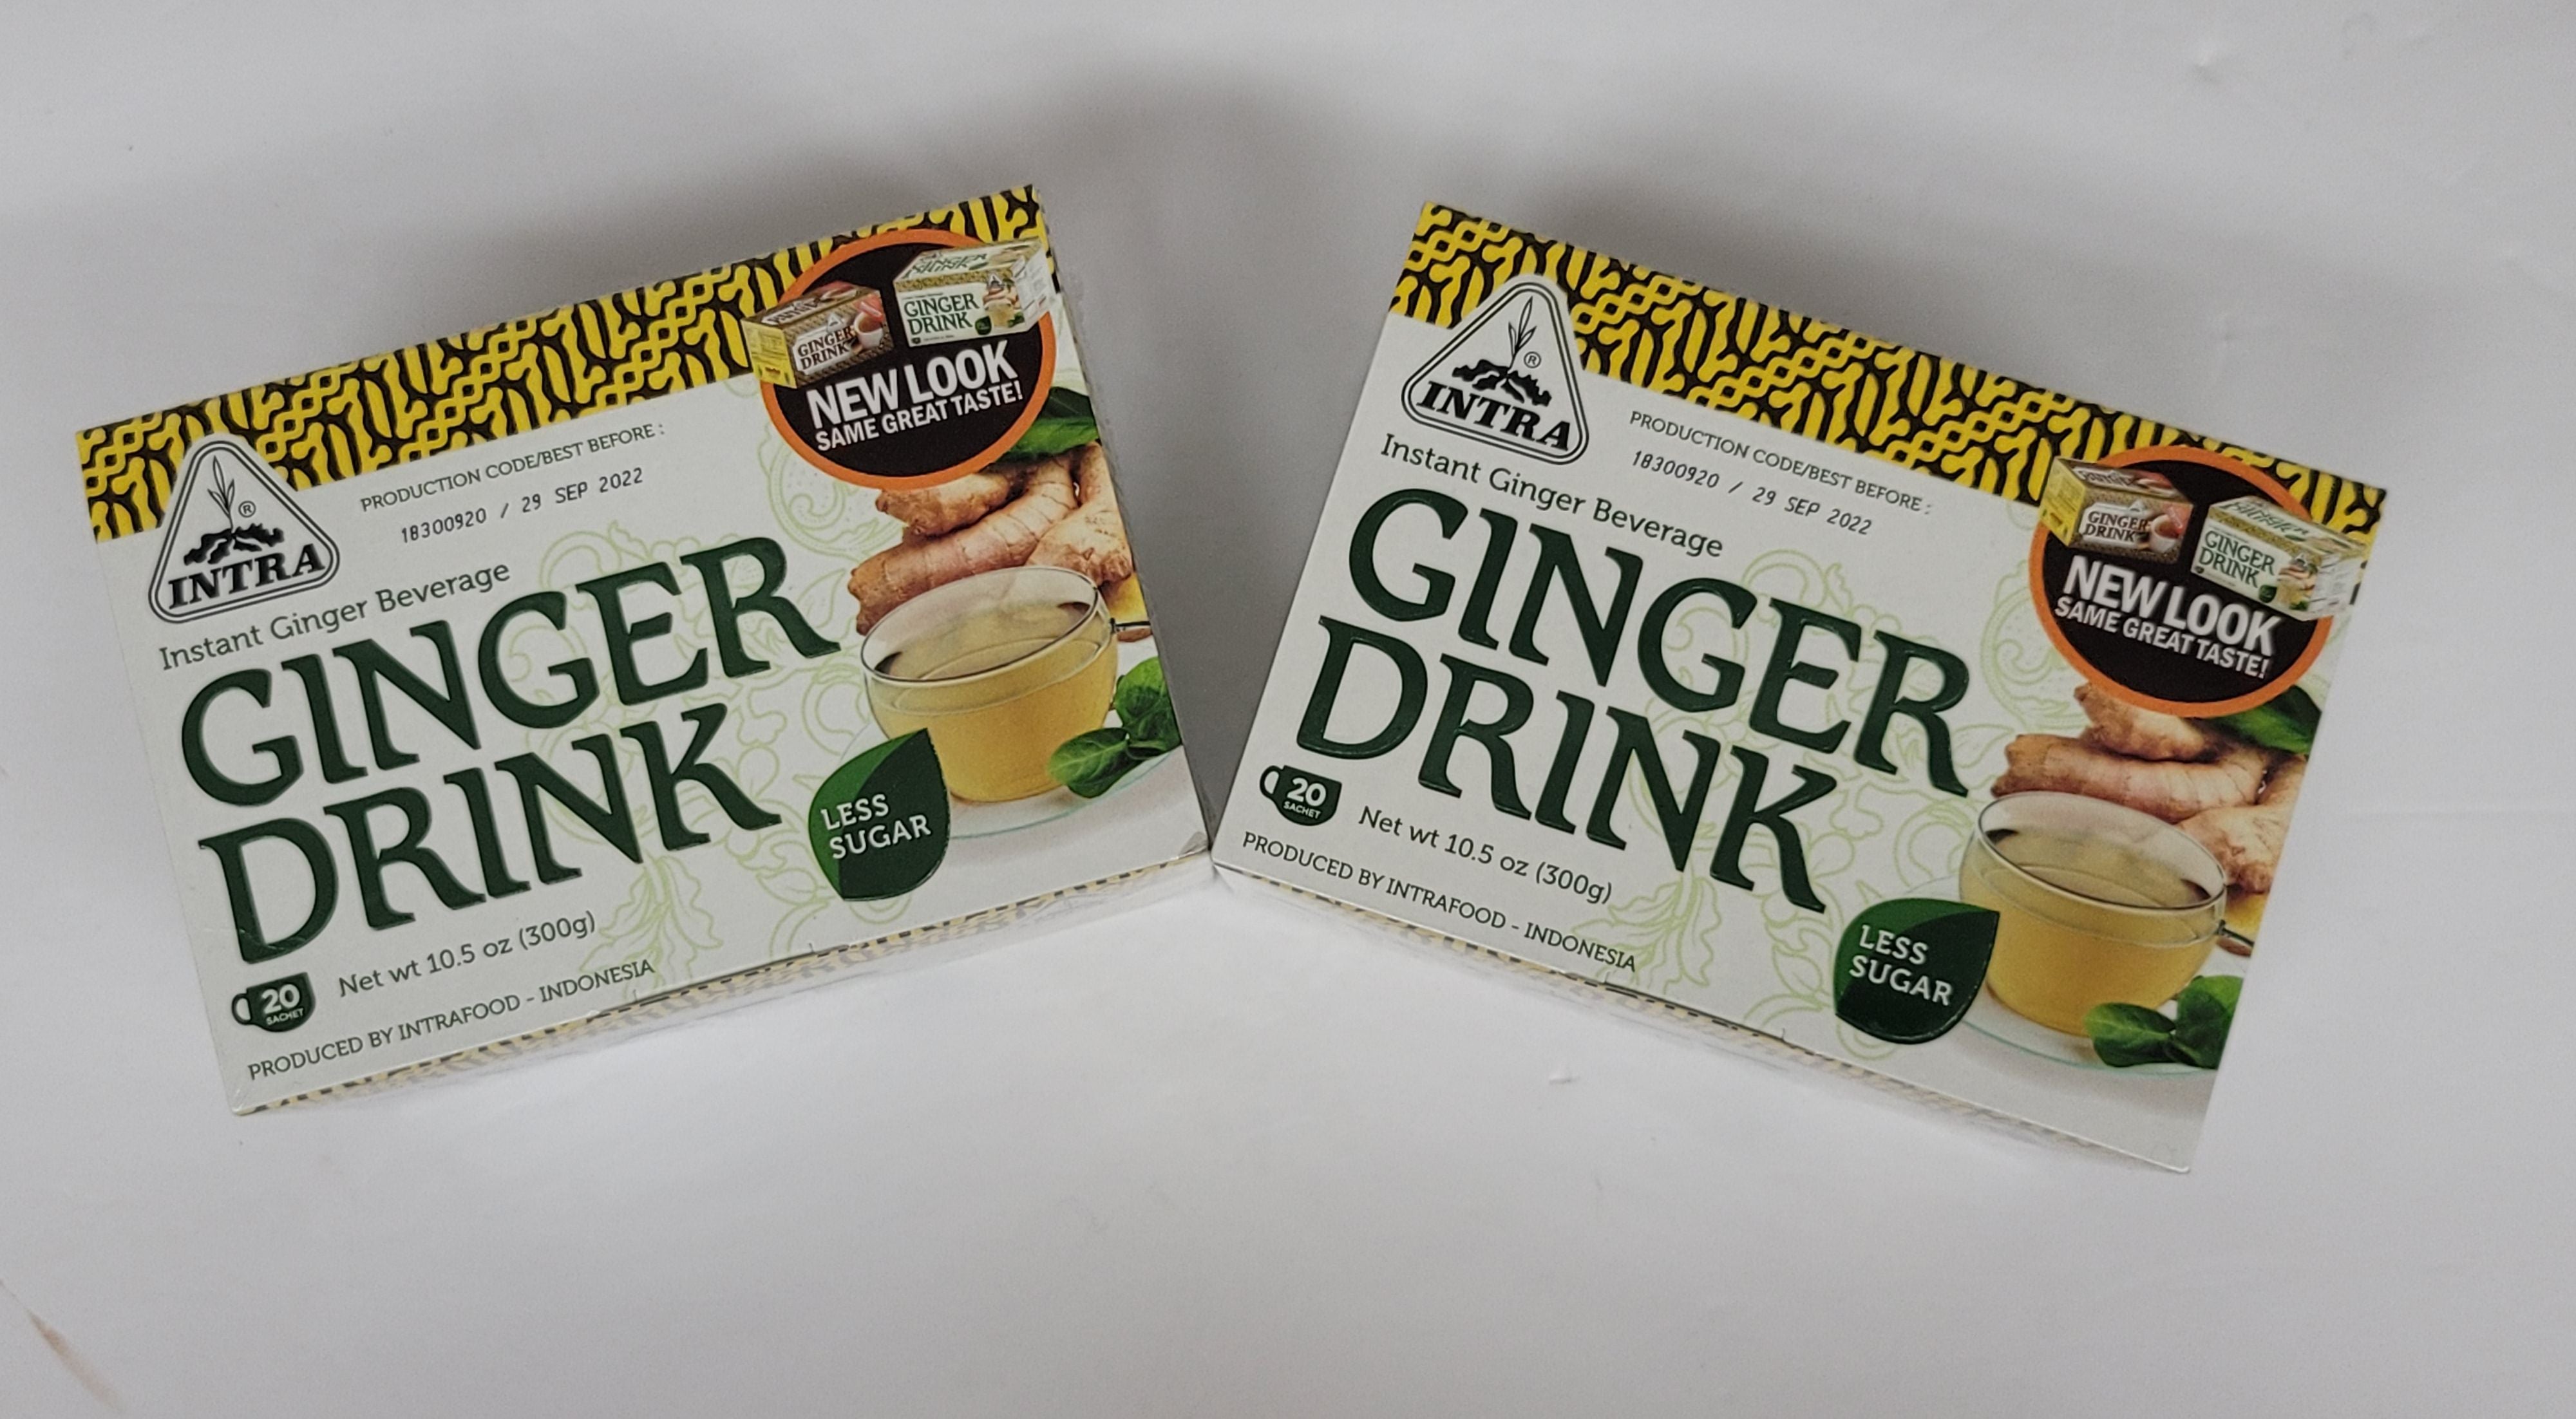 Ginger Drink Less Sugar (Instant Ginger Beverage)